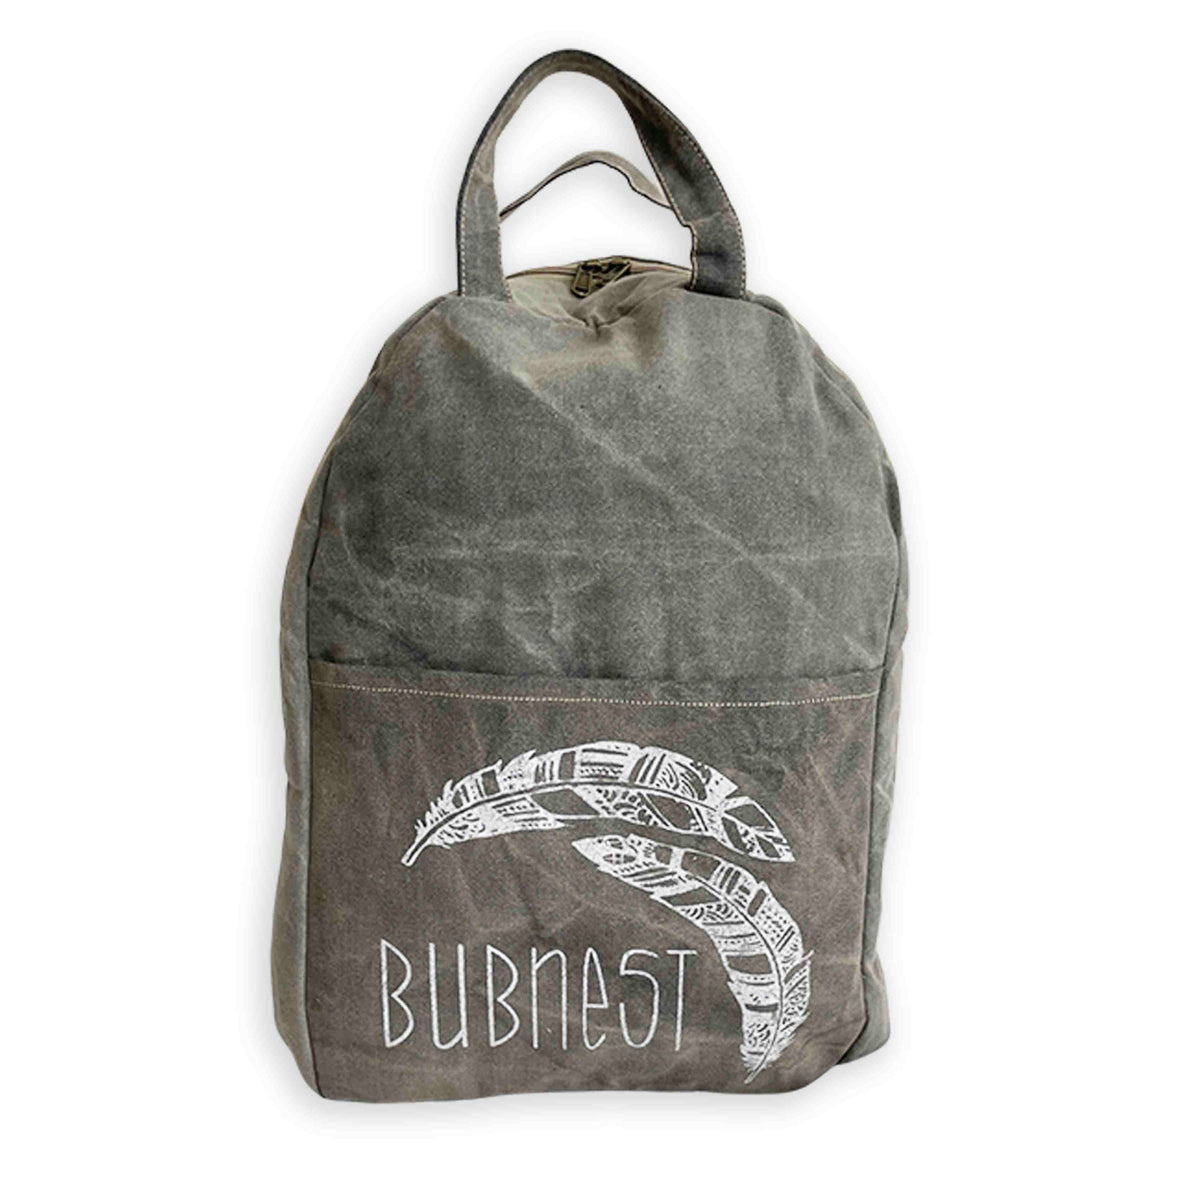 Bubnest® Travel Bag